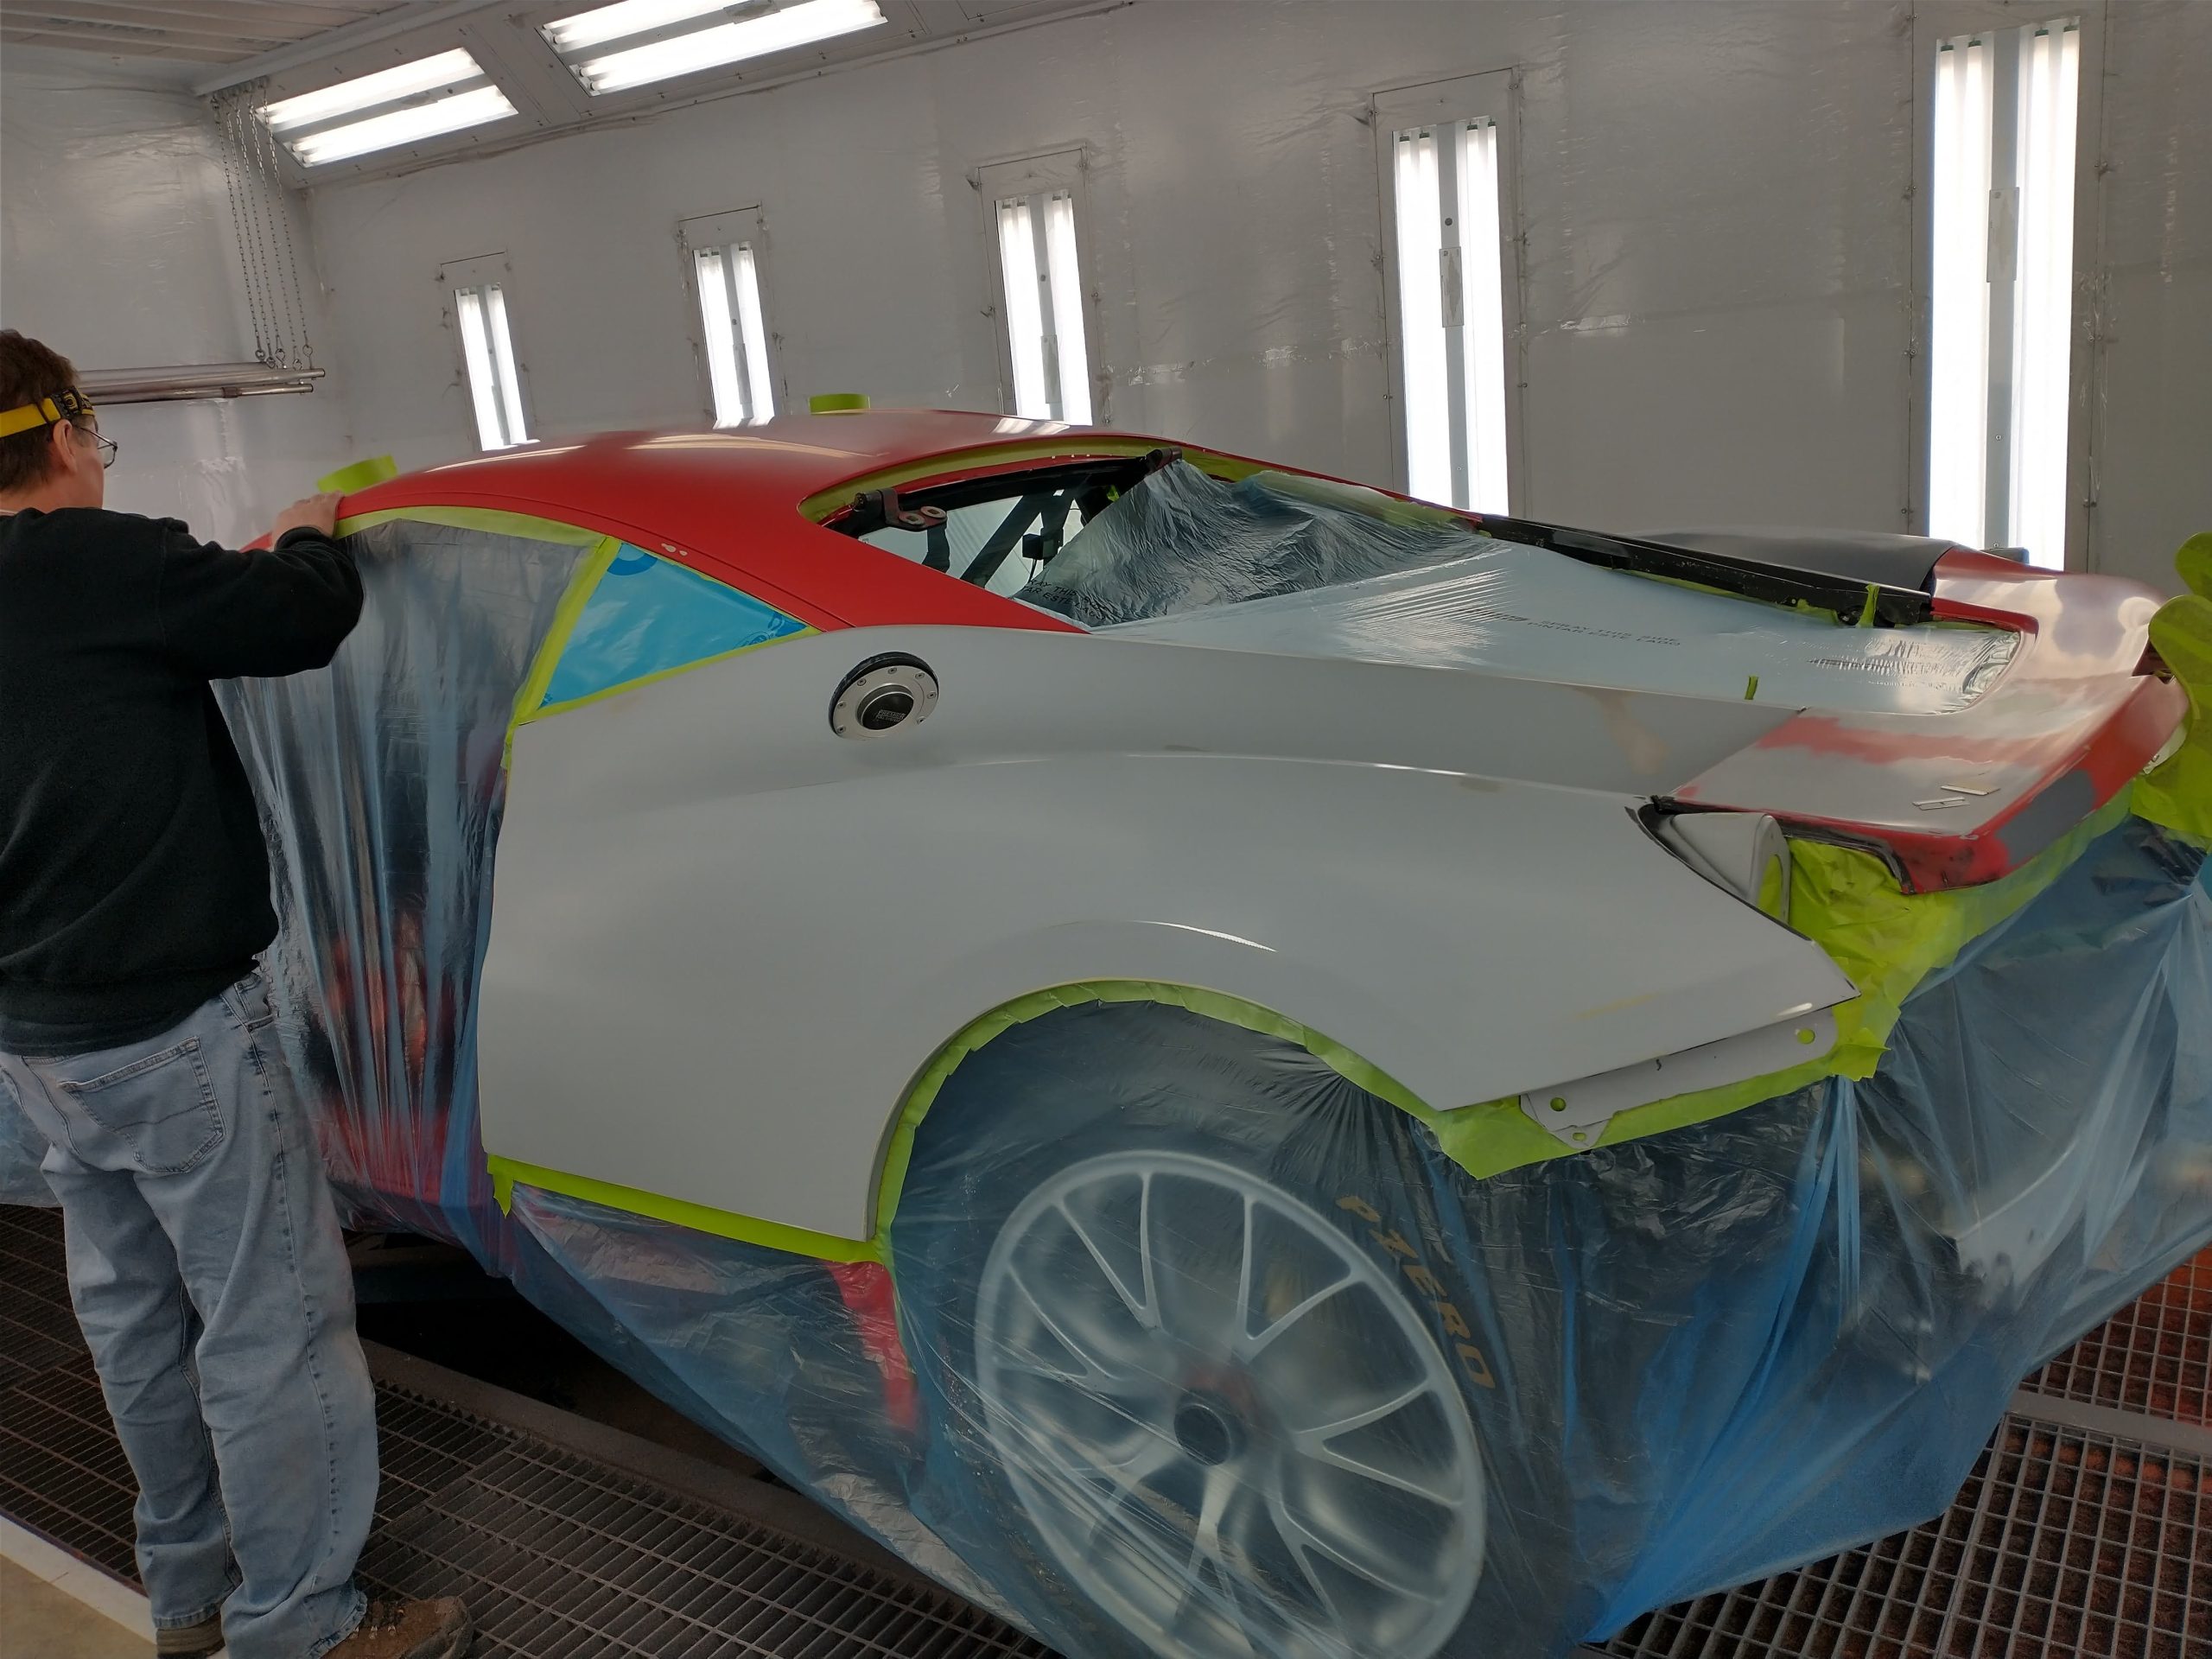 zayn as cars on X: Ferrari 458 custom paint job